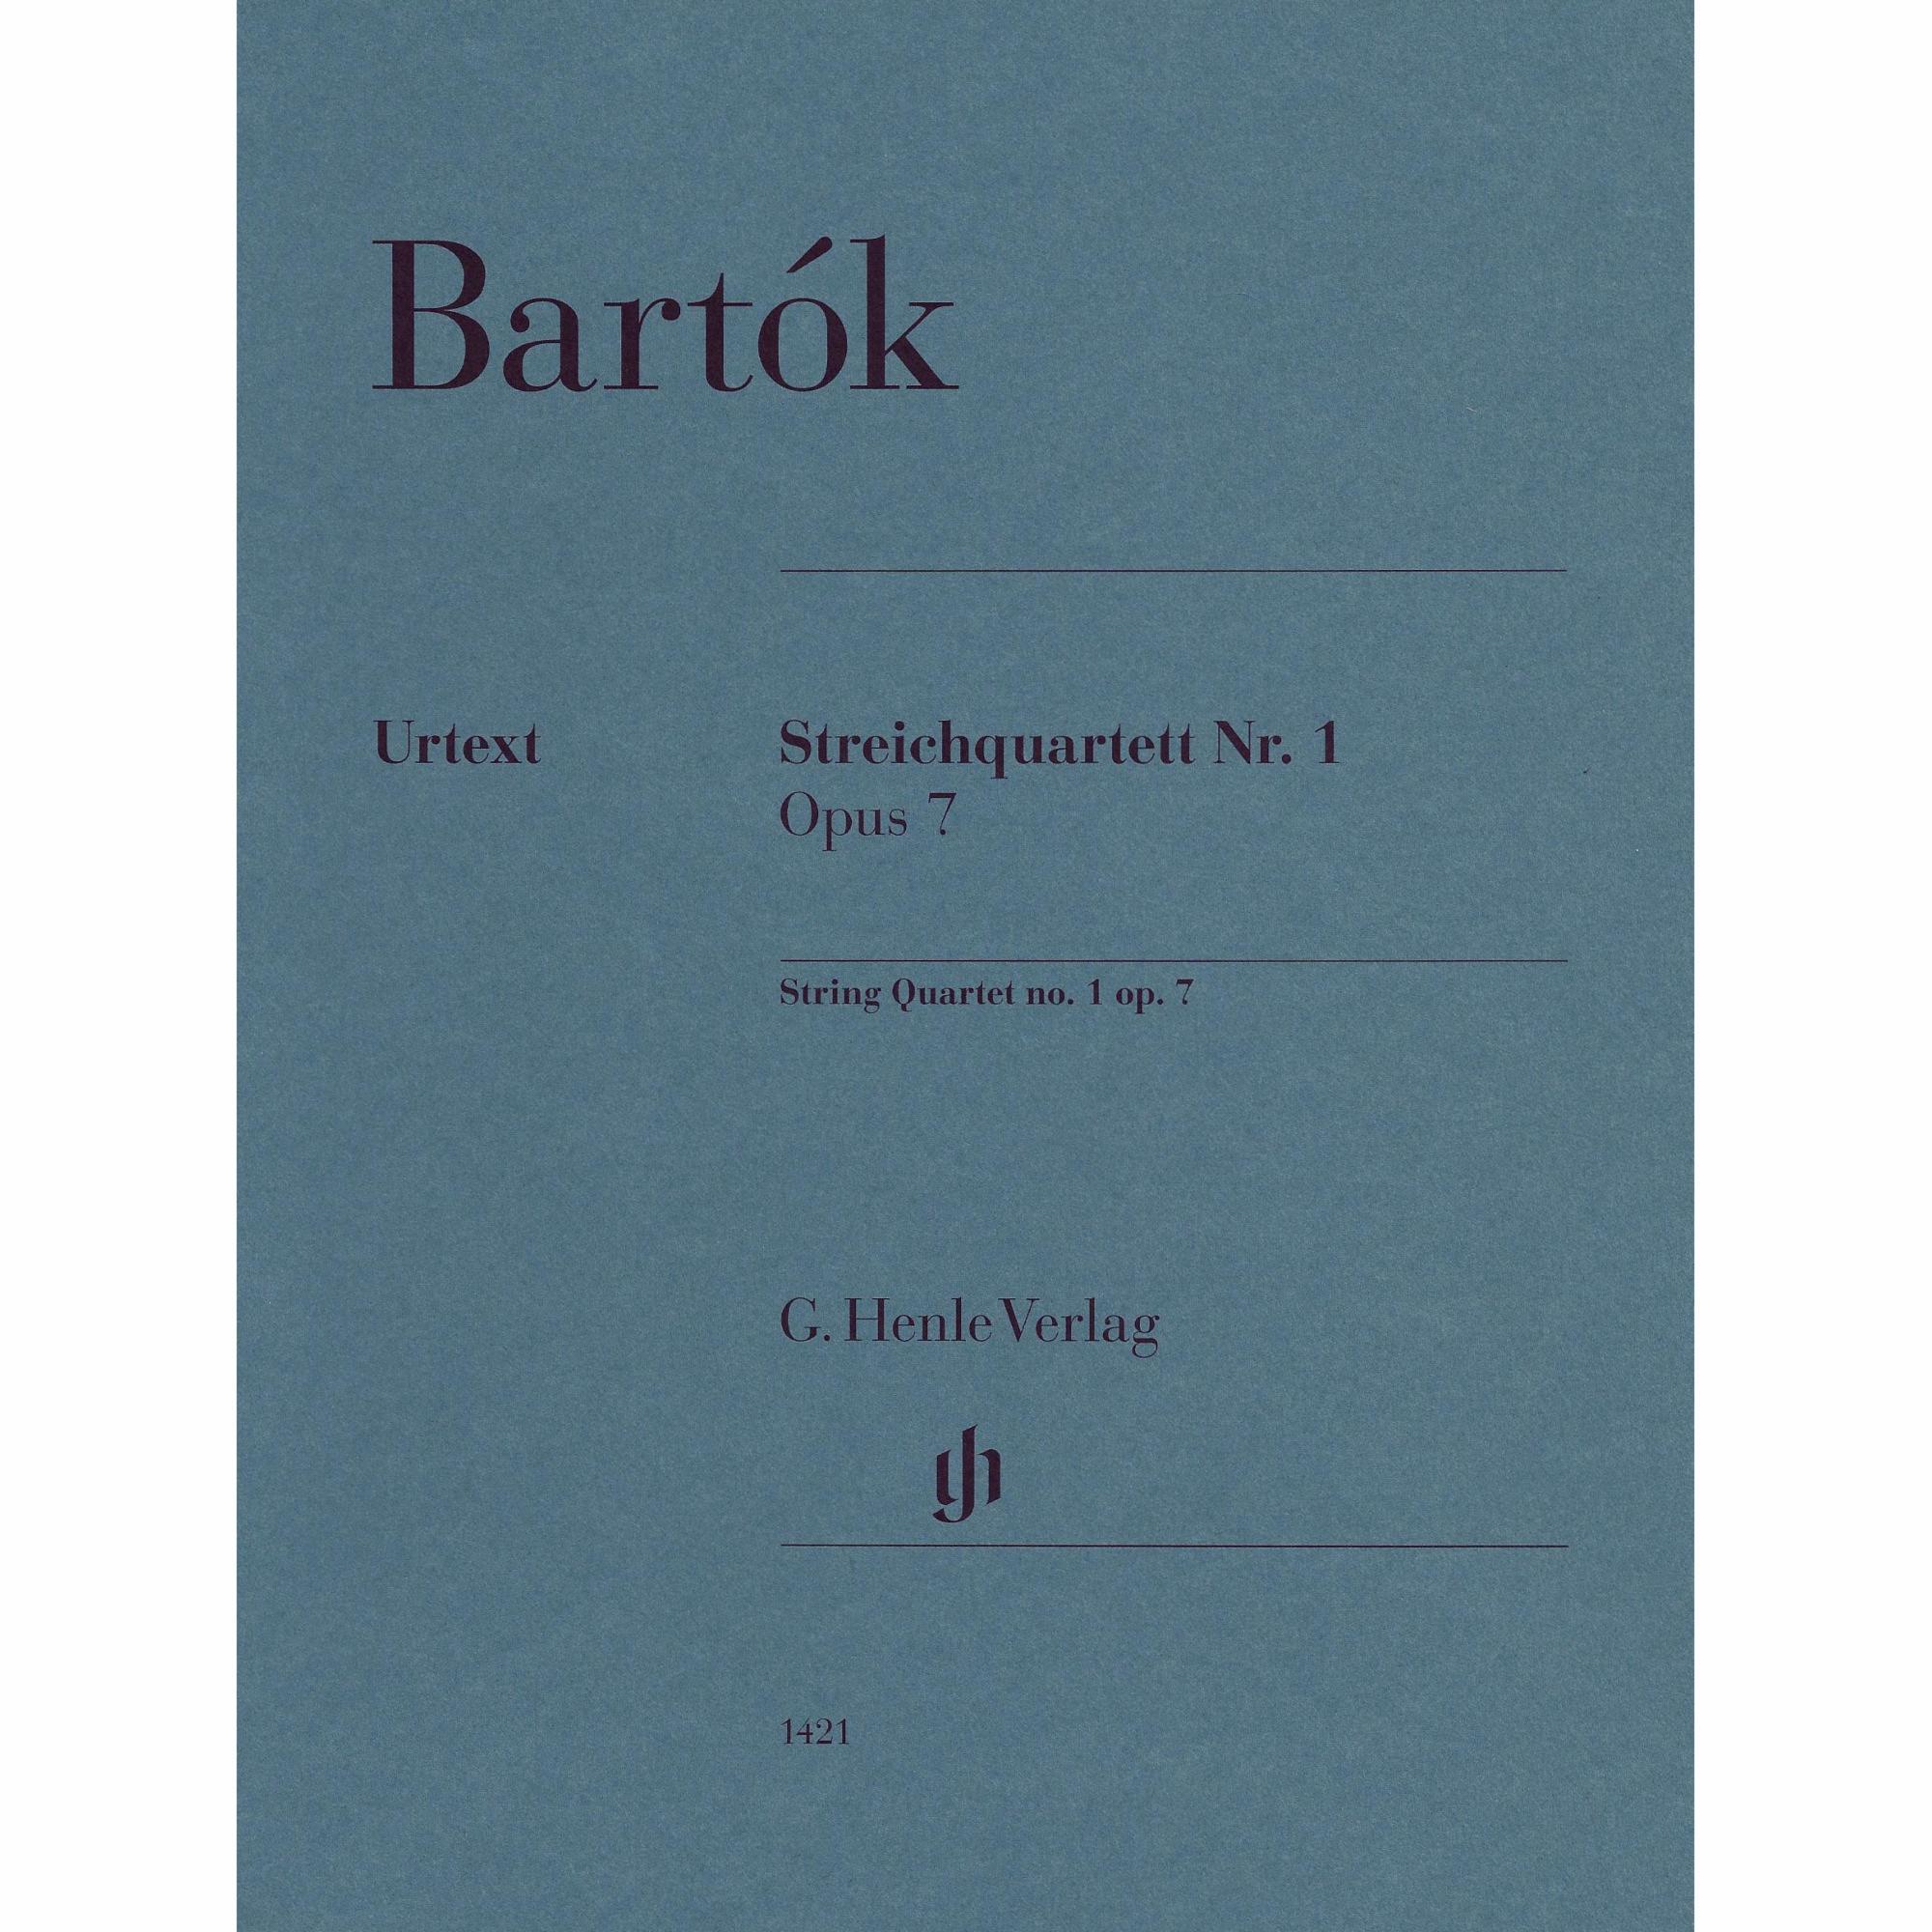 Bartok -- String Quartet No. 1, Op. 7